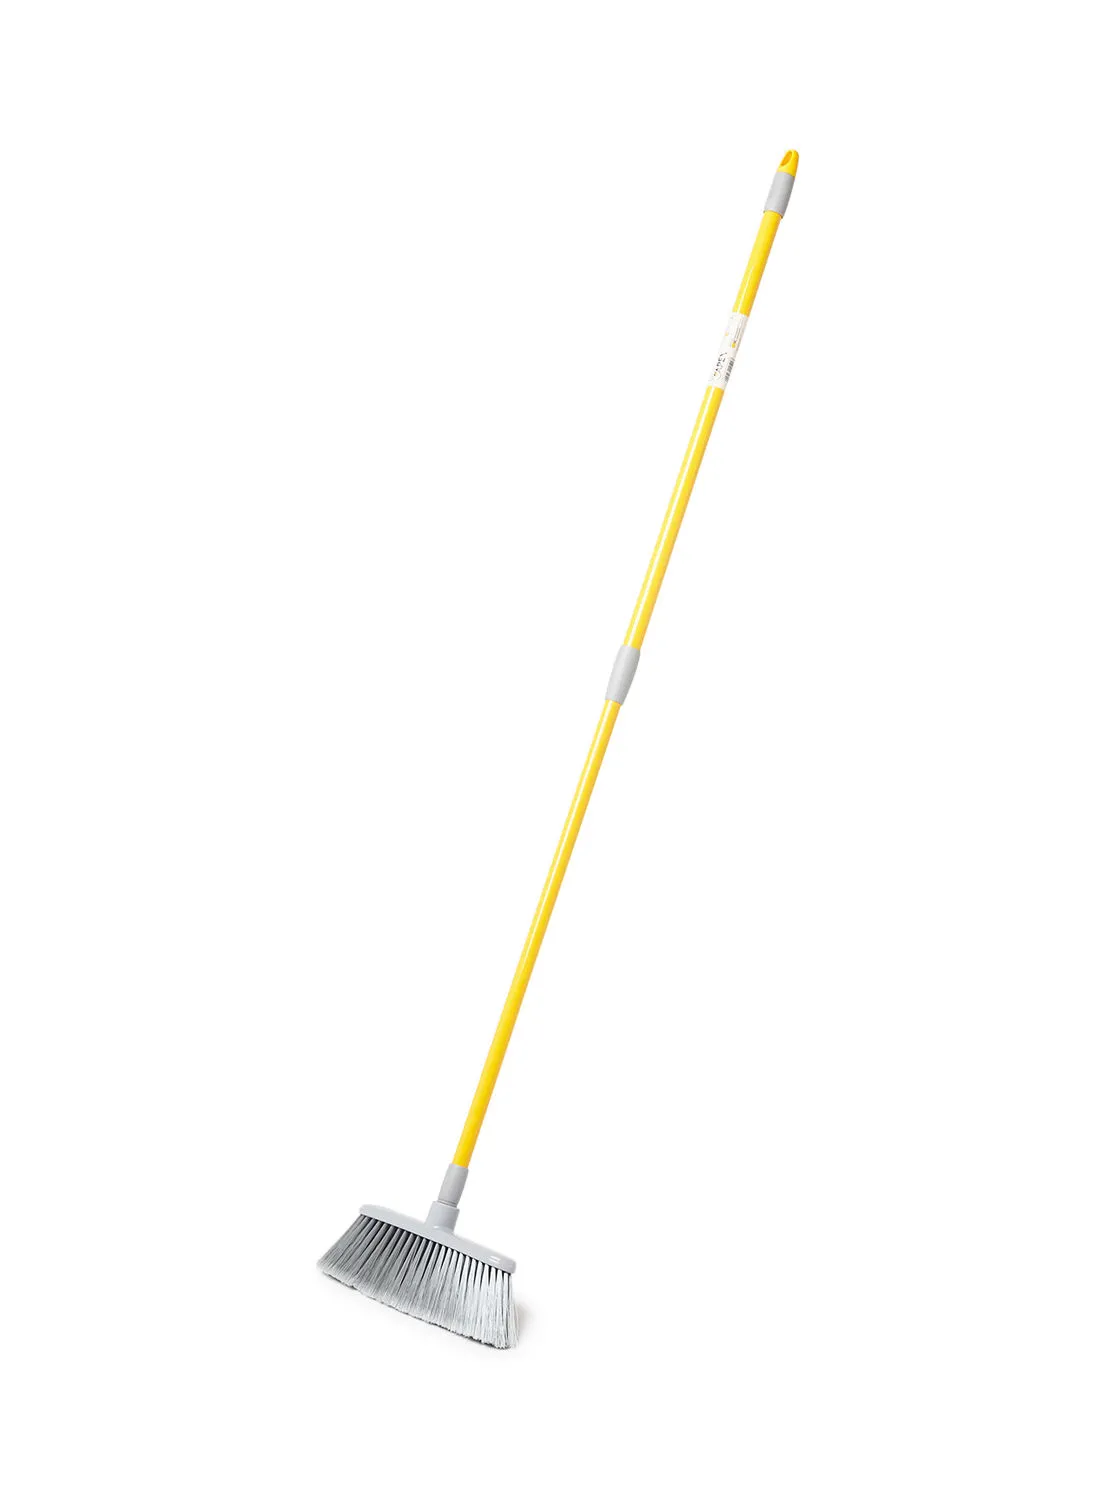 APEX Agile Broom With Telescopic Handle Yellow 32x77x5cm